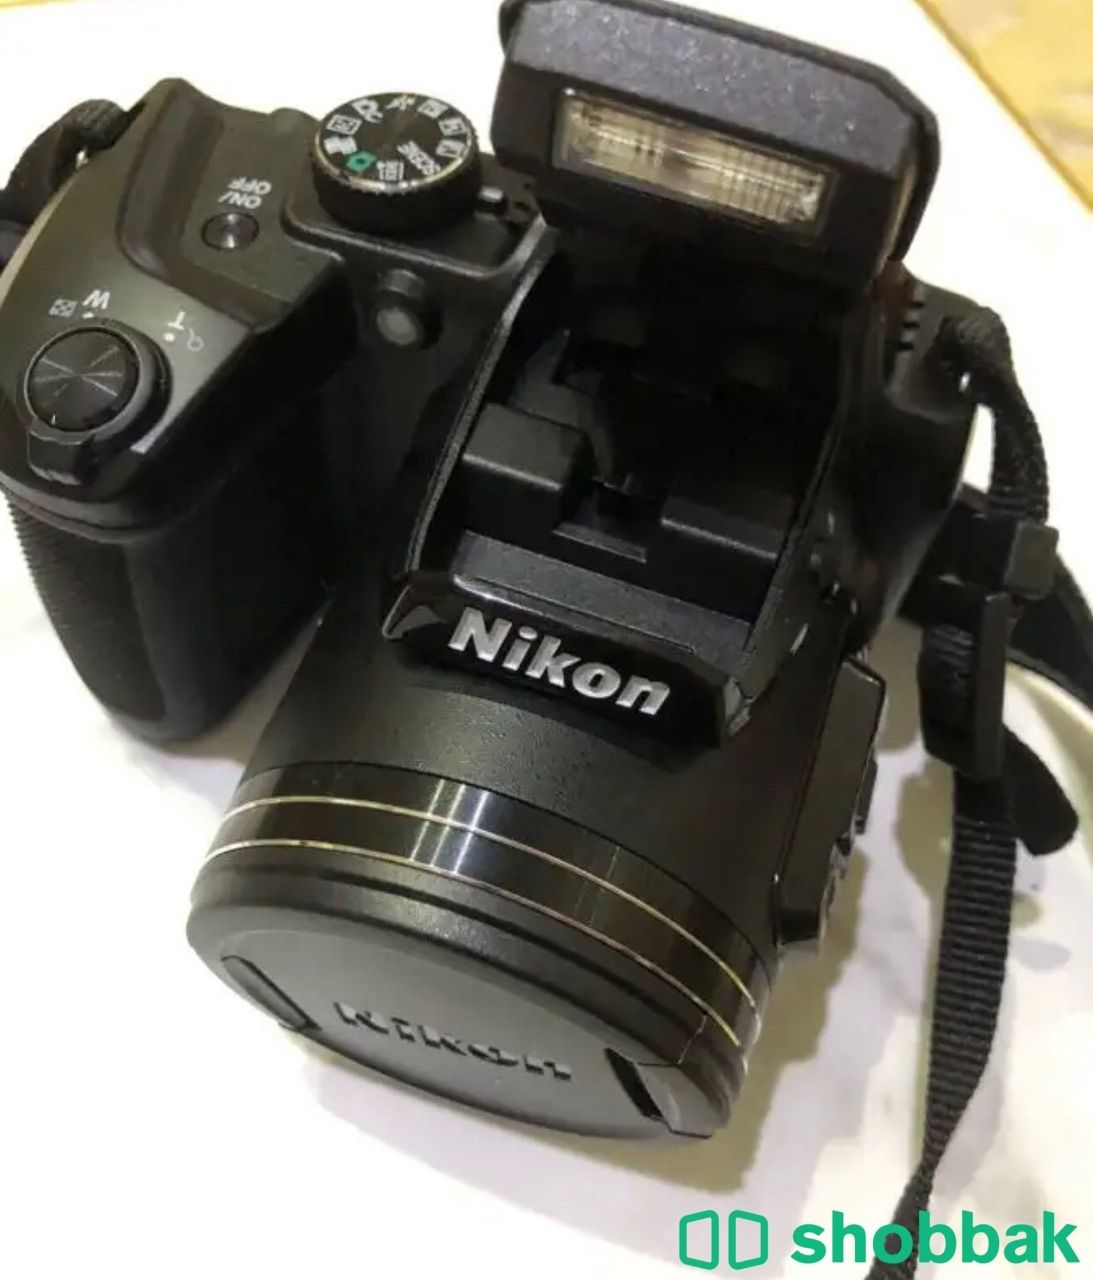 Nikon Coolpix B500 Shobbak Saudi Arabia